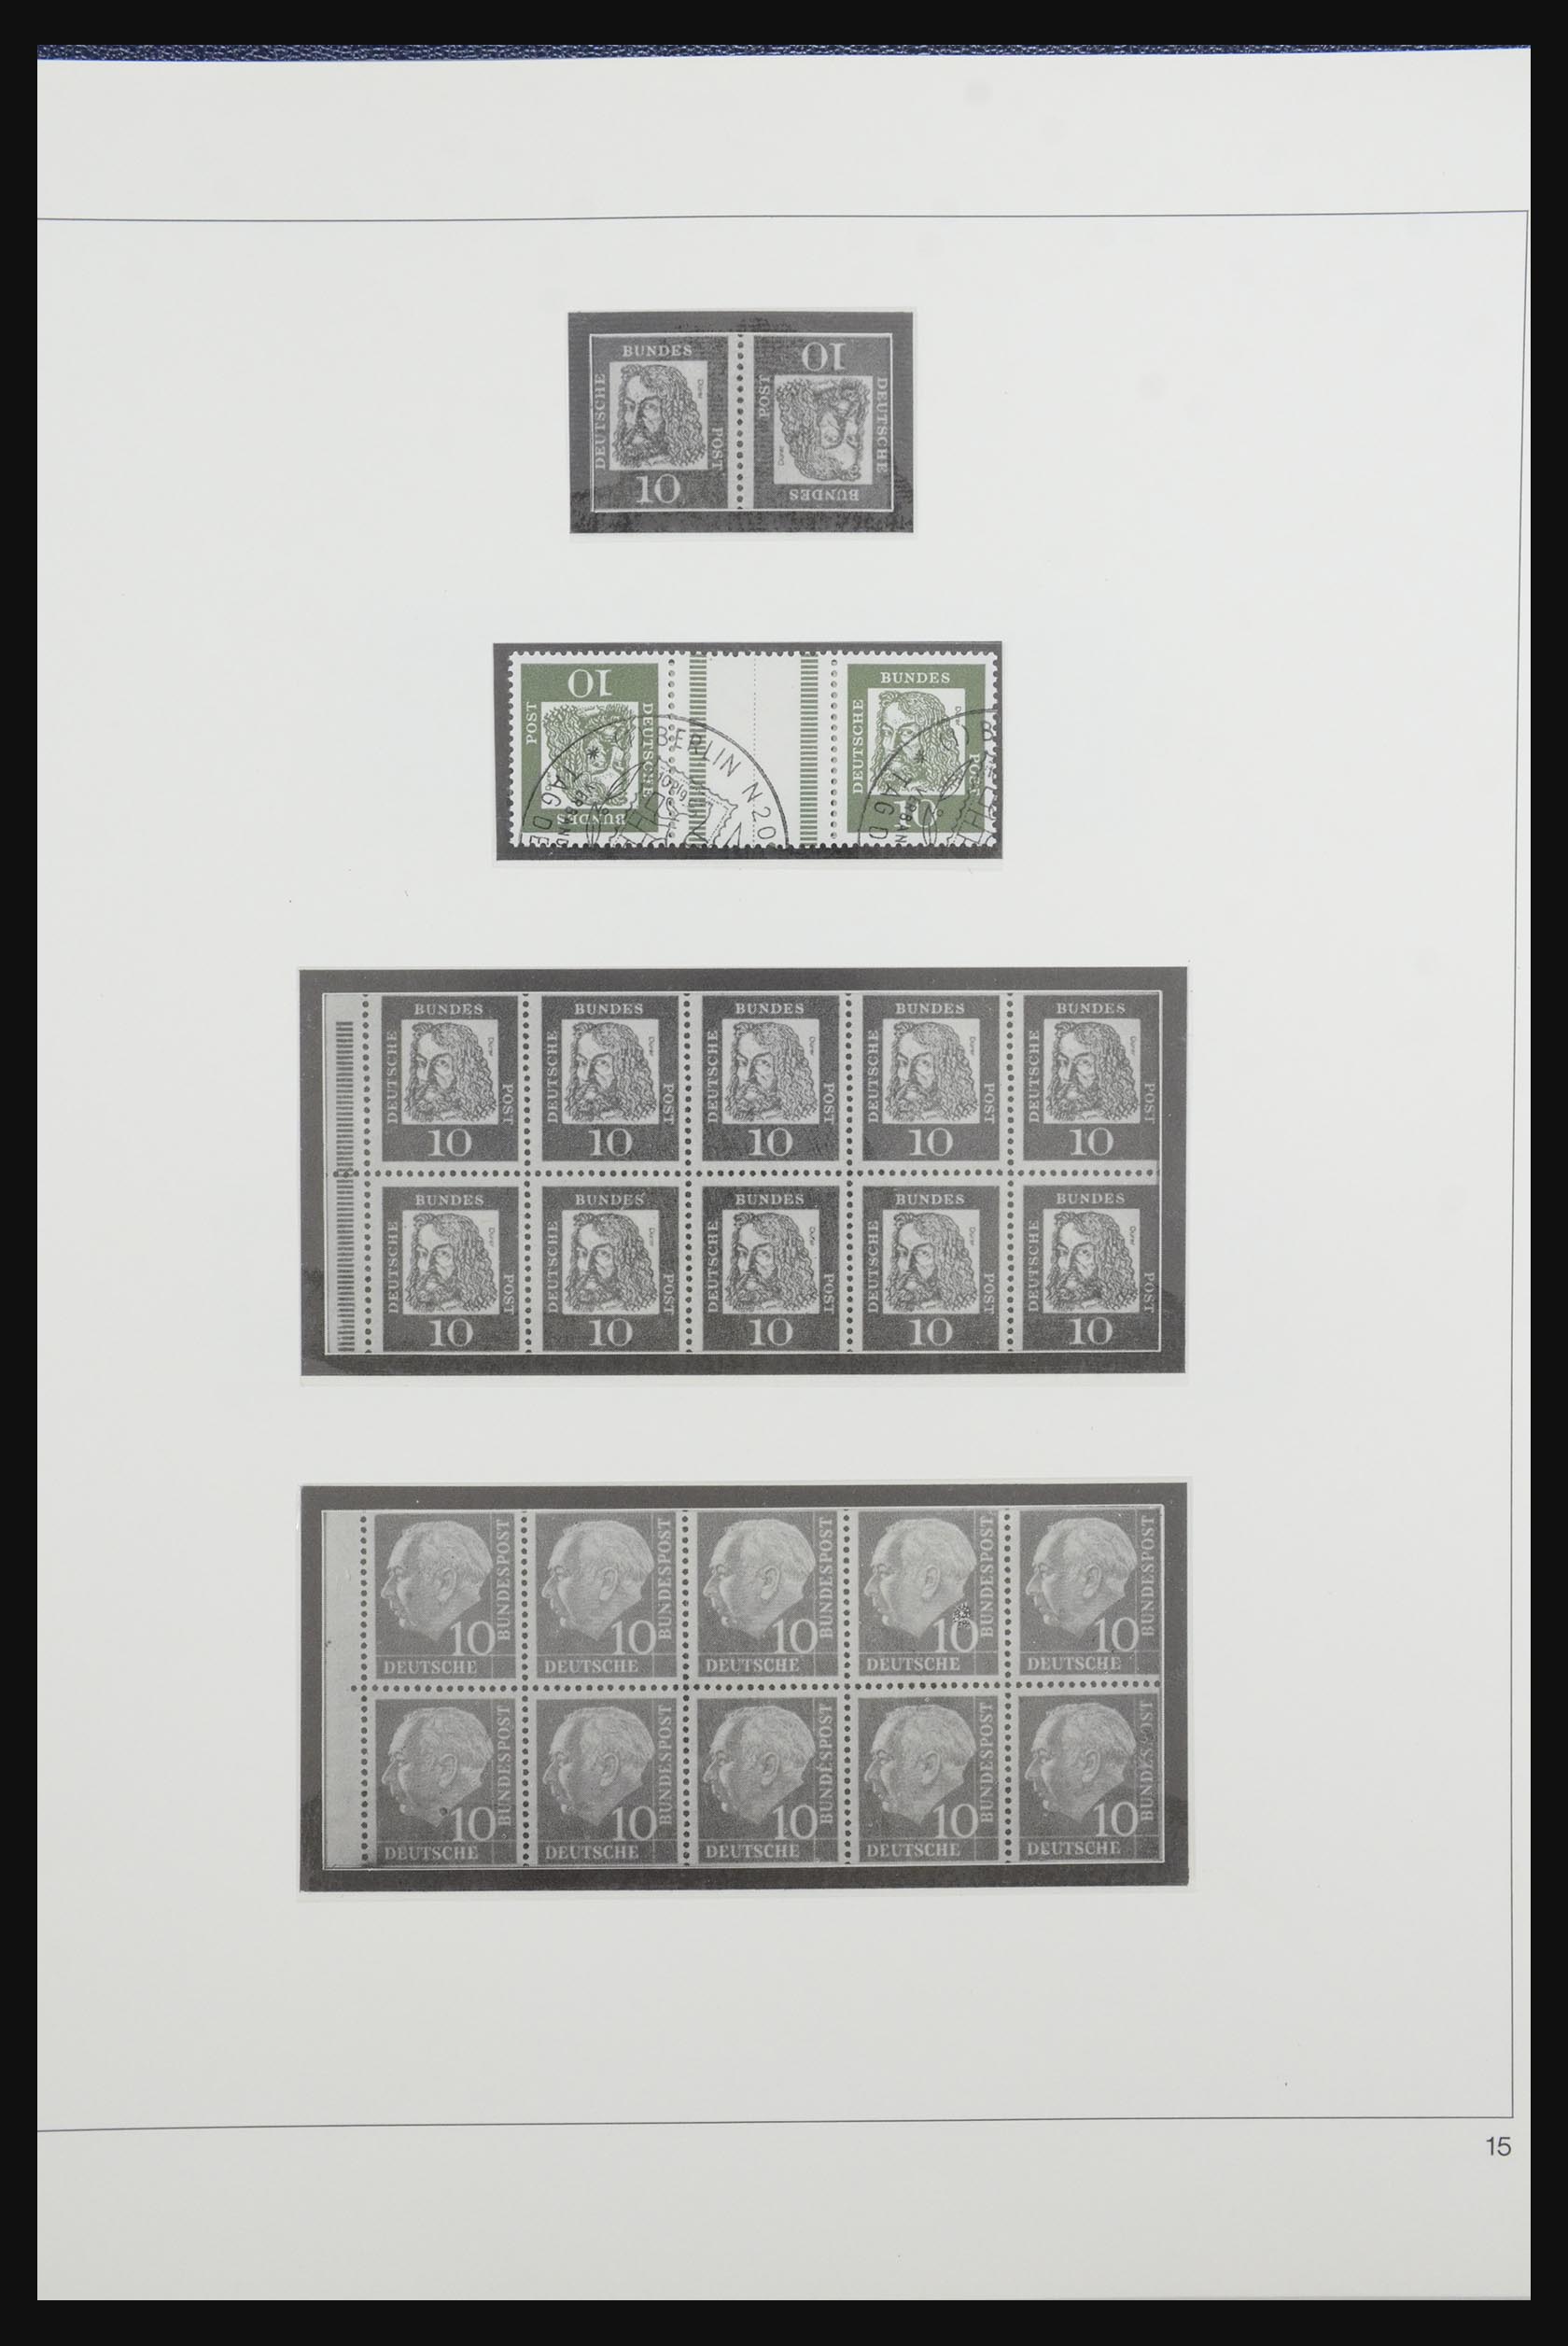 31842 019 - 31842 Bundespost combinations 1951-2003.